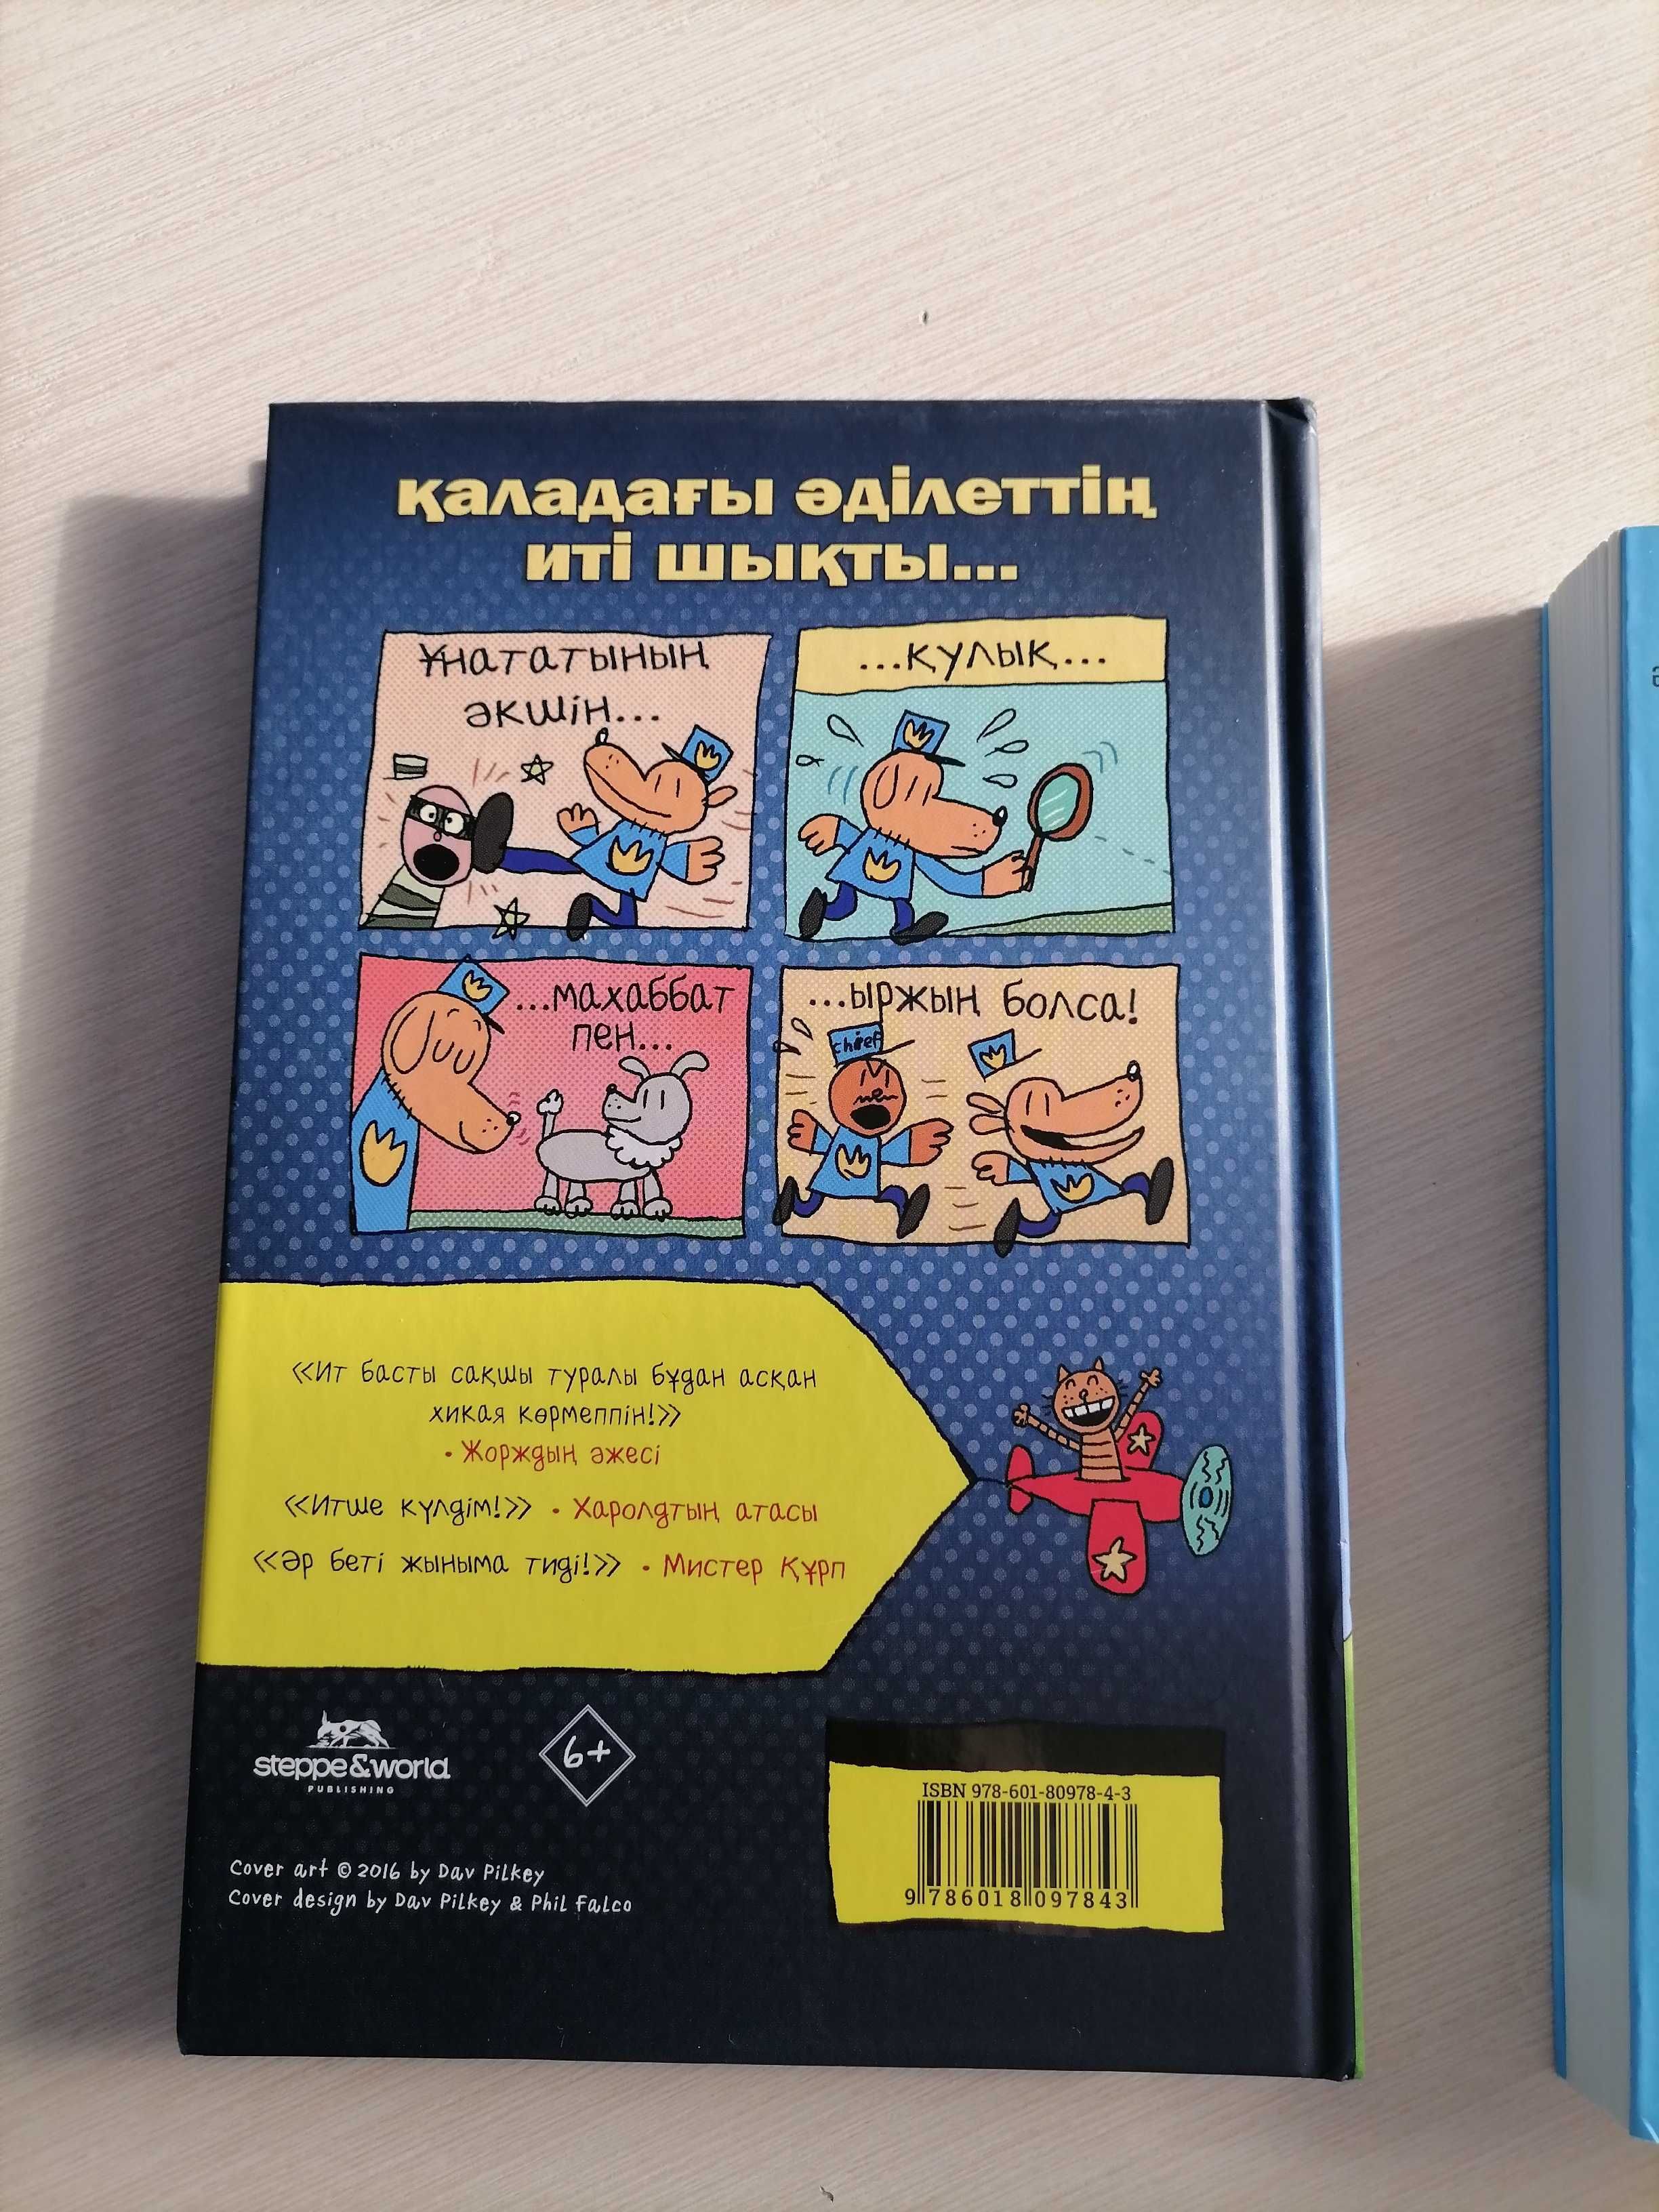 Продам книги новые на казахском языке